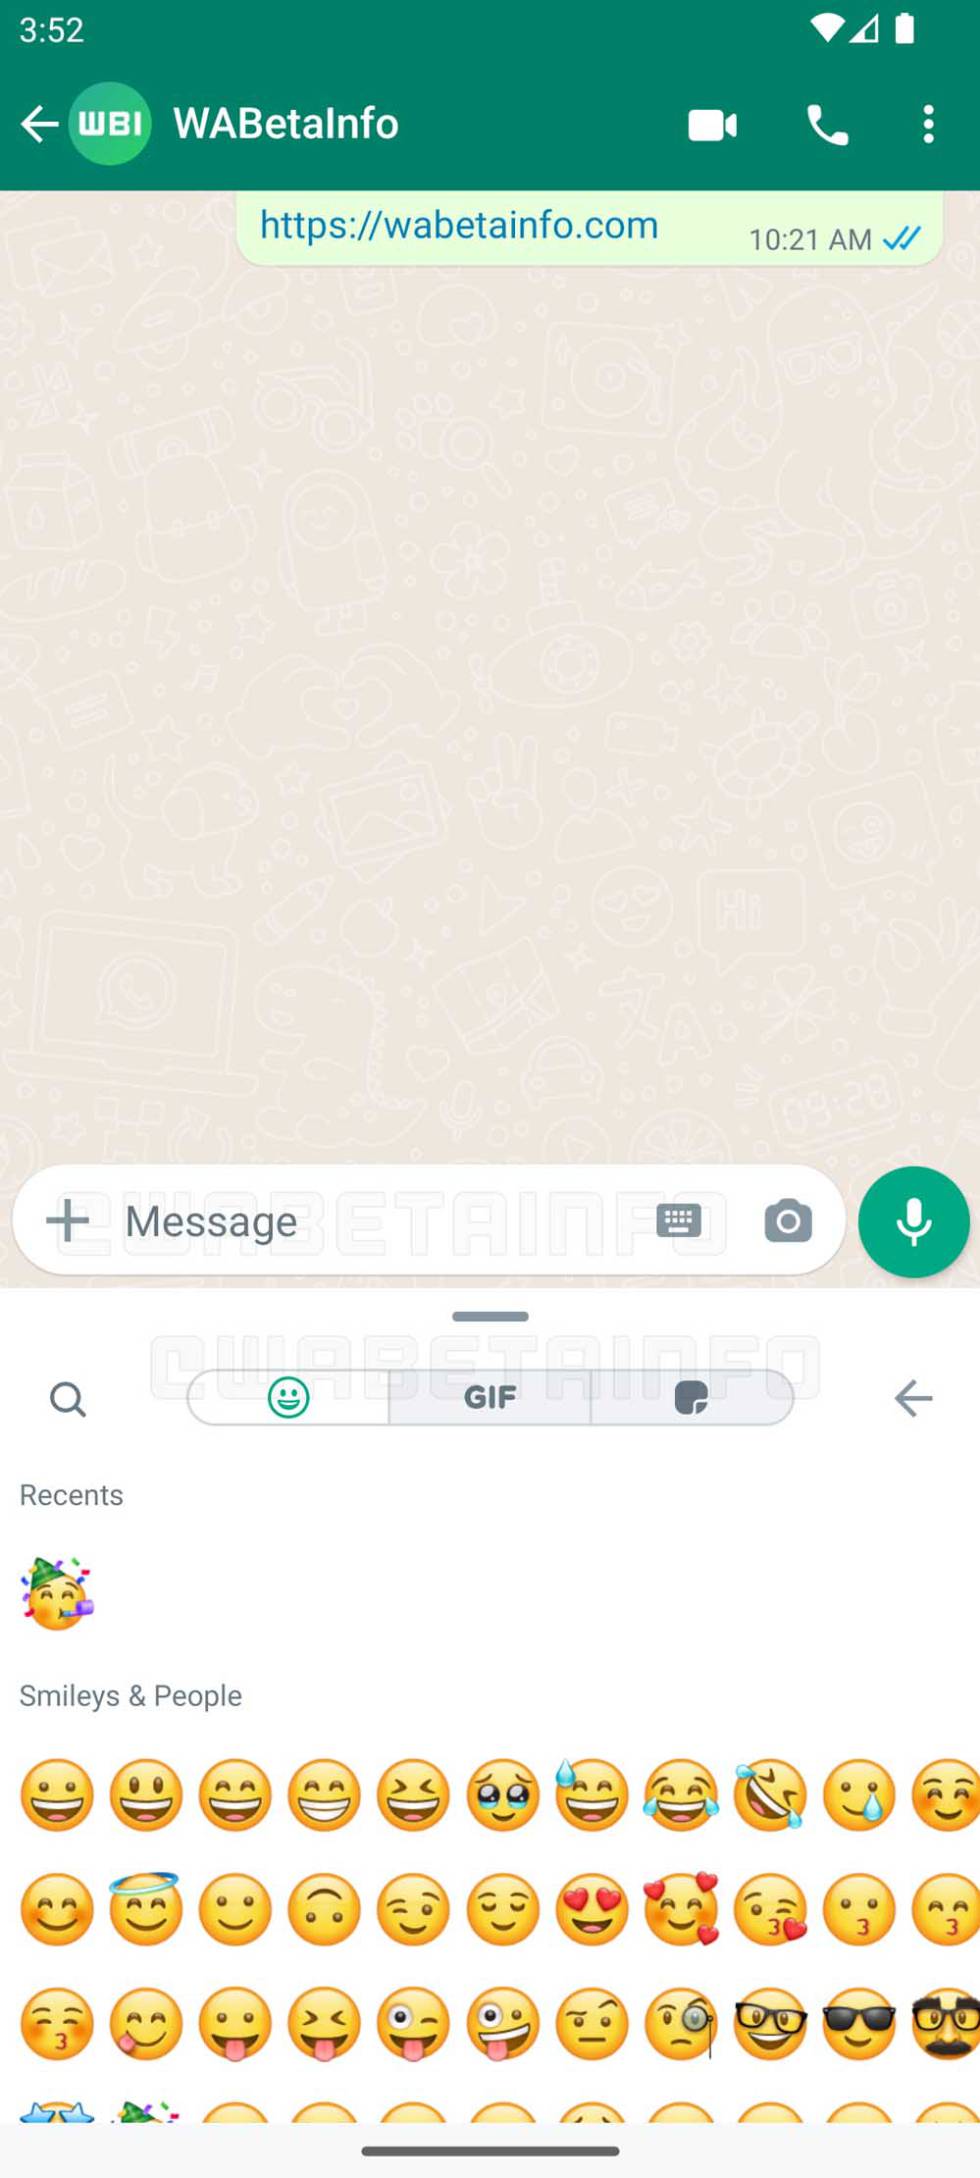 Nueva interfaz de WhatsApp para emojis, GIF y stickers